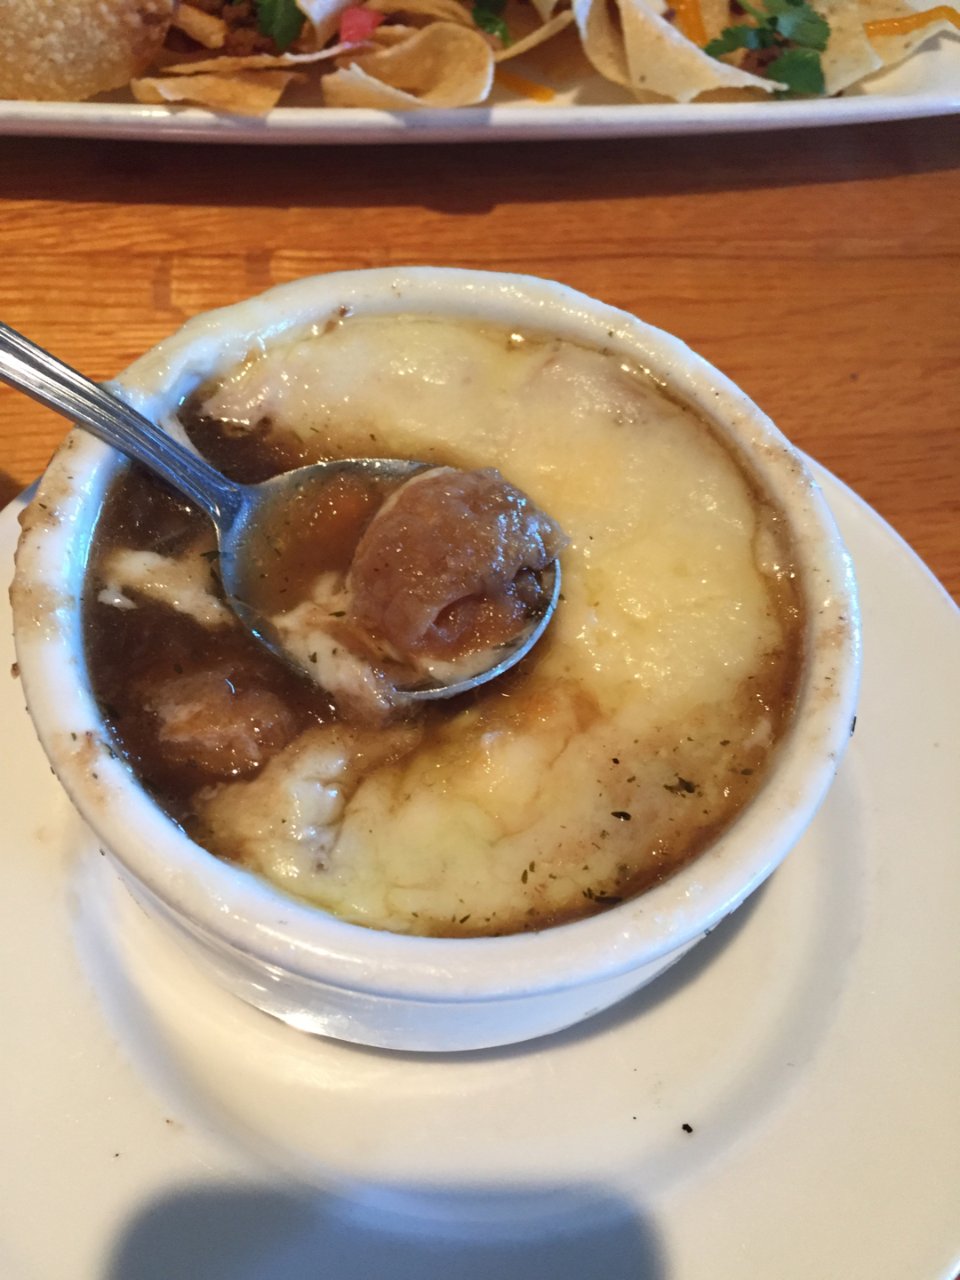 Applebee's,Applebee’s French onion soup